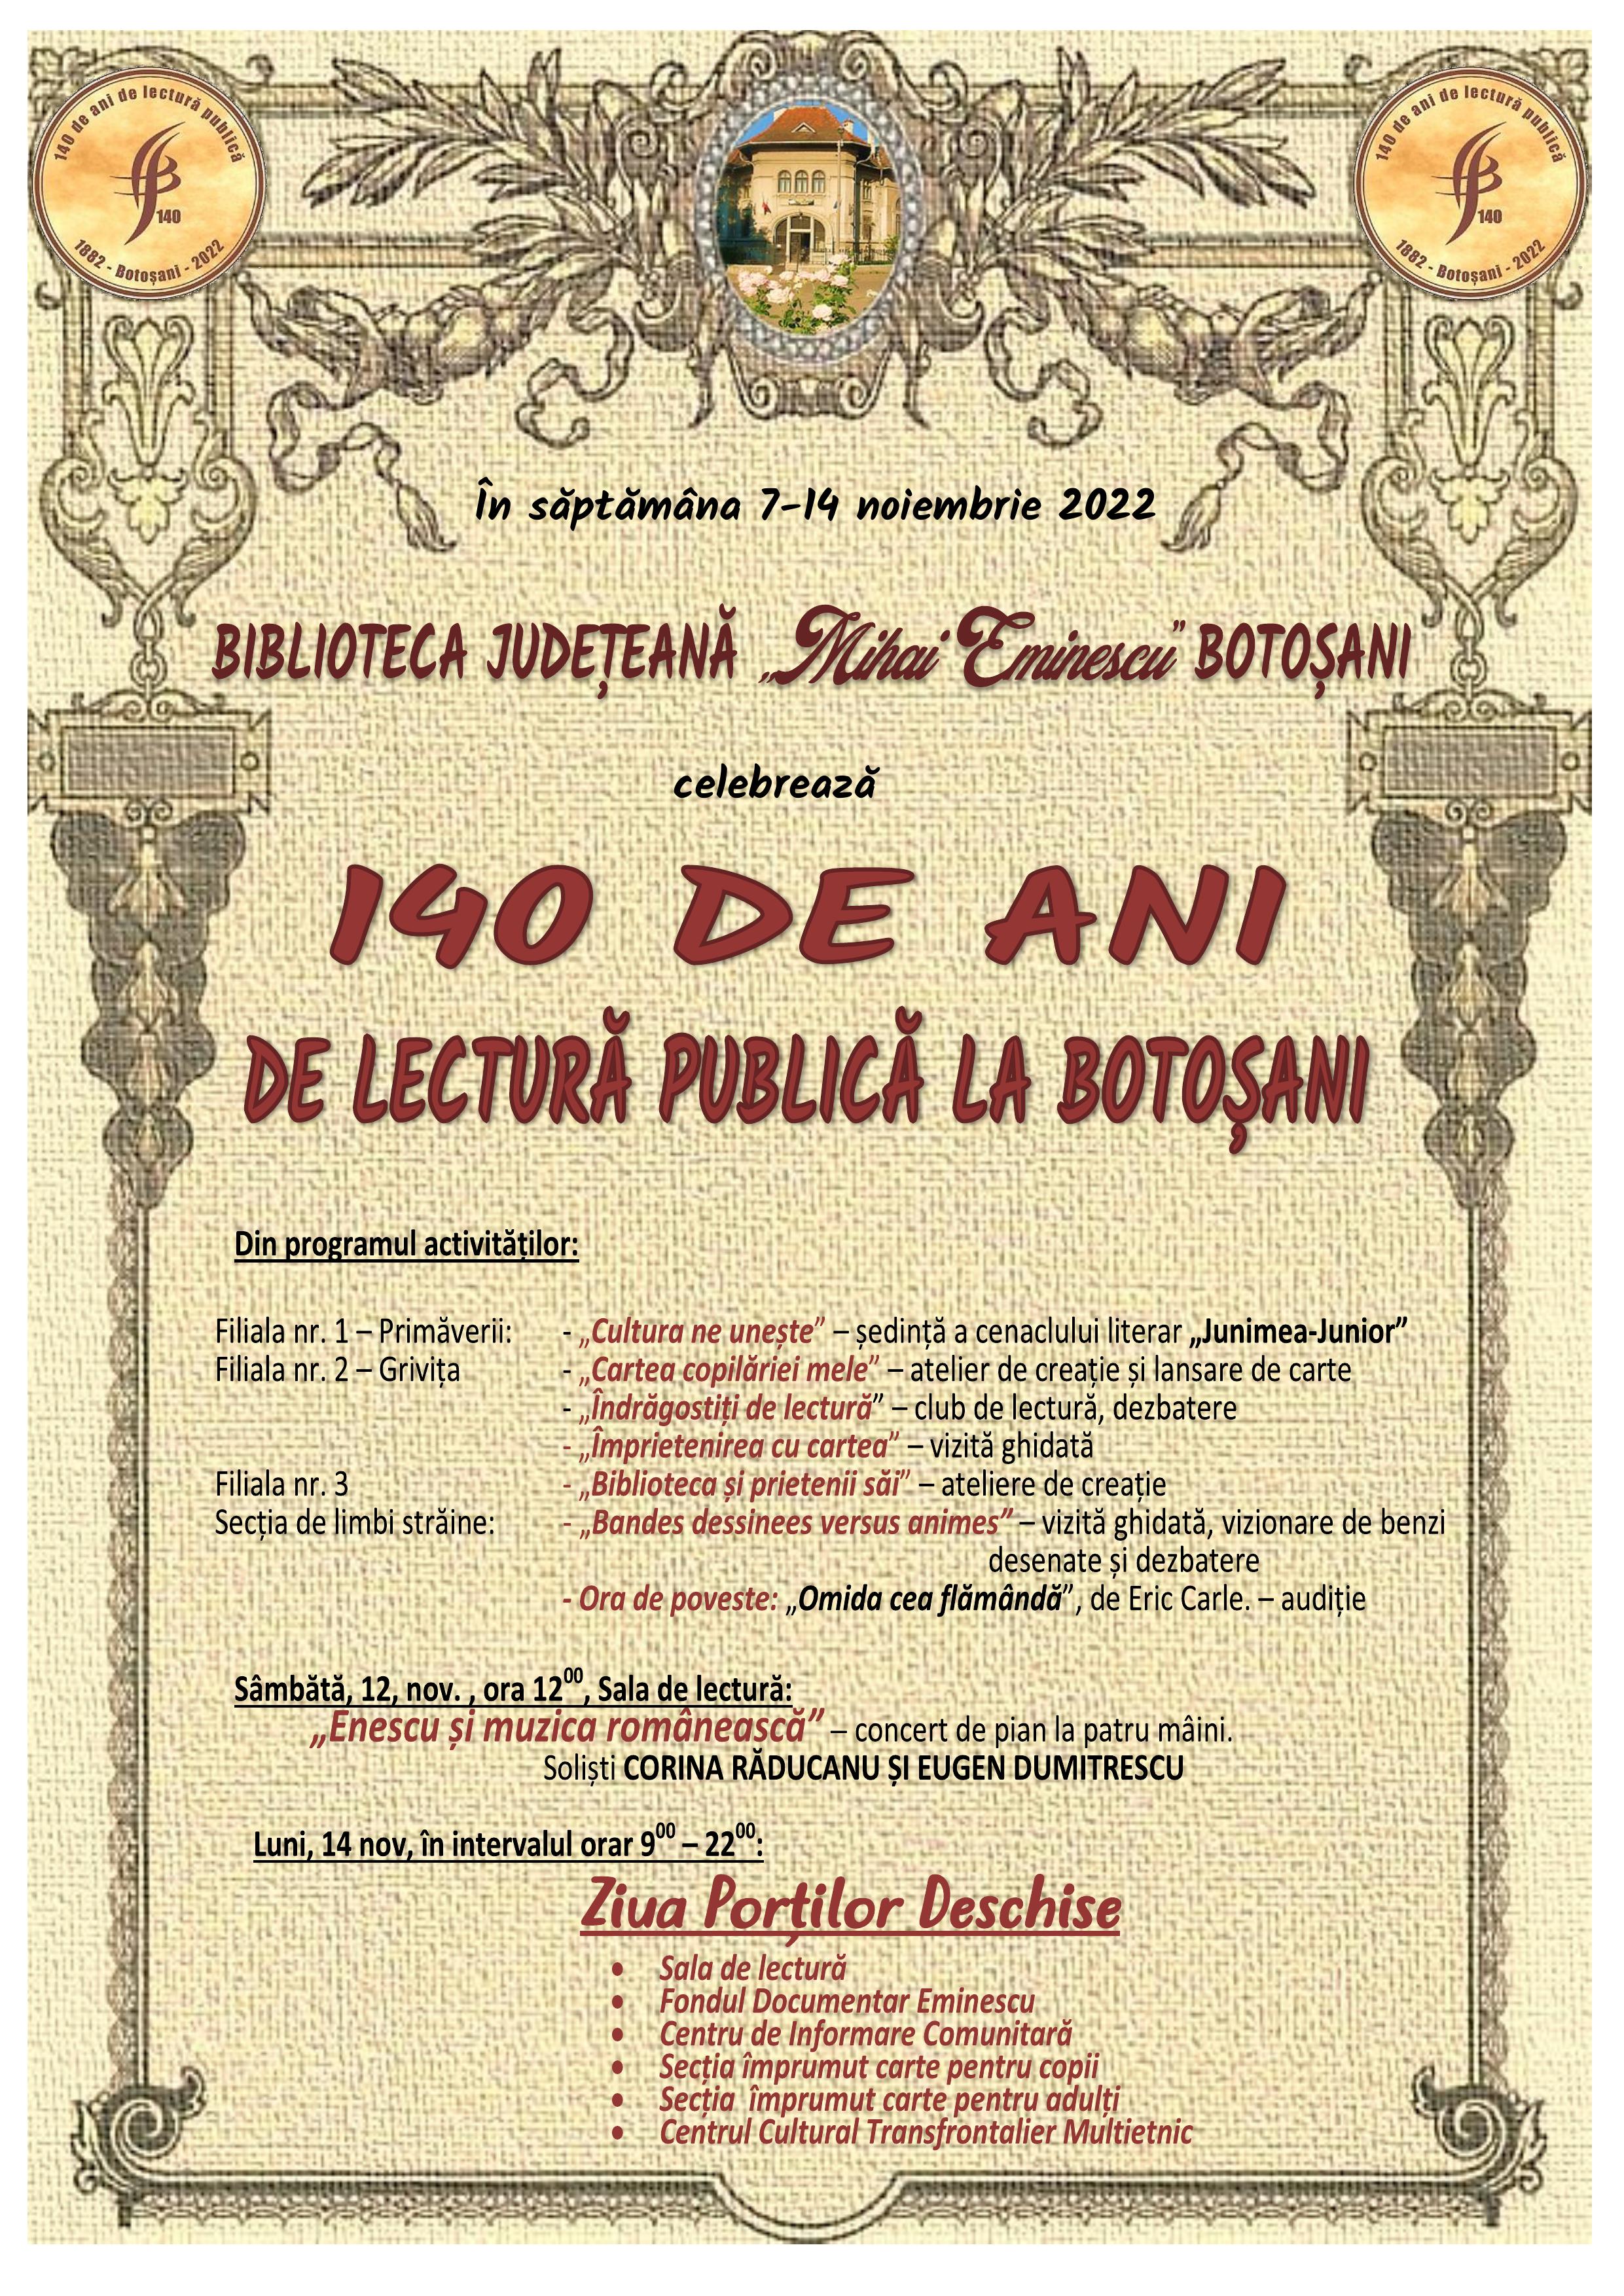 ”140 de ani de lectură publică la Botoșani”